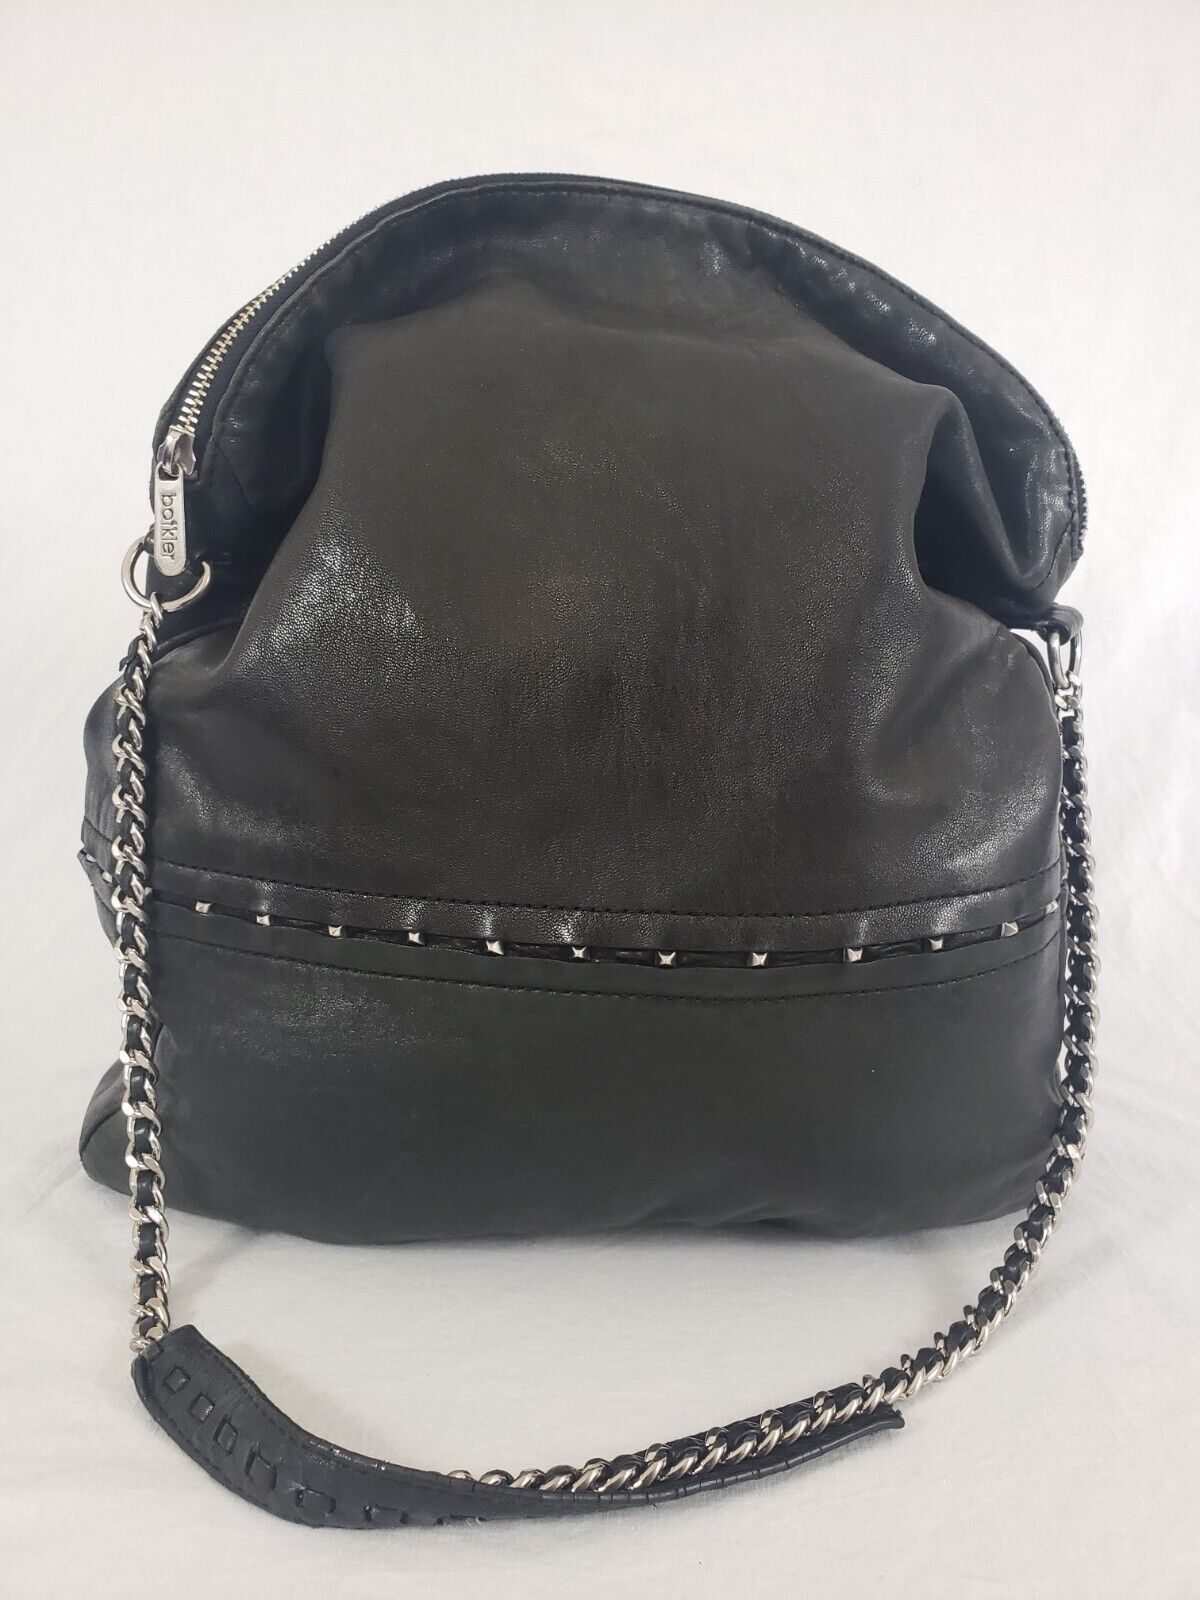 Botkier Large Leather Handbag Purse Black Zip Shoulder